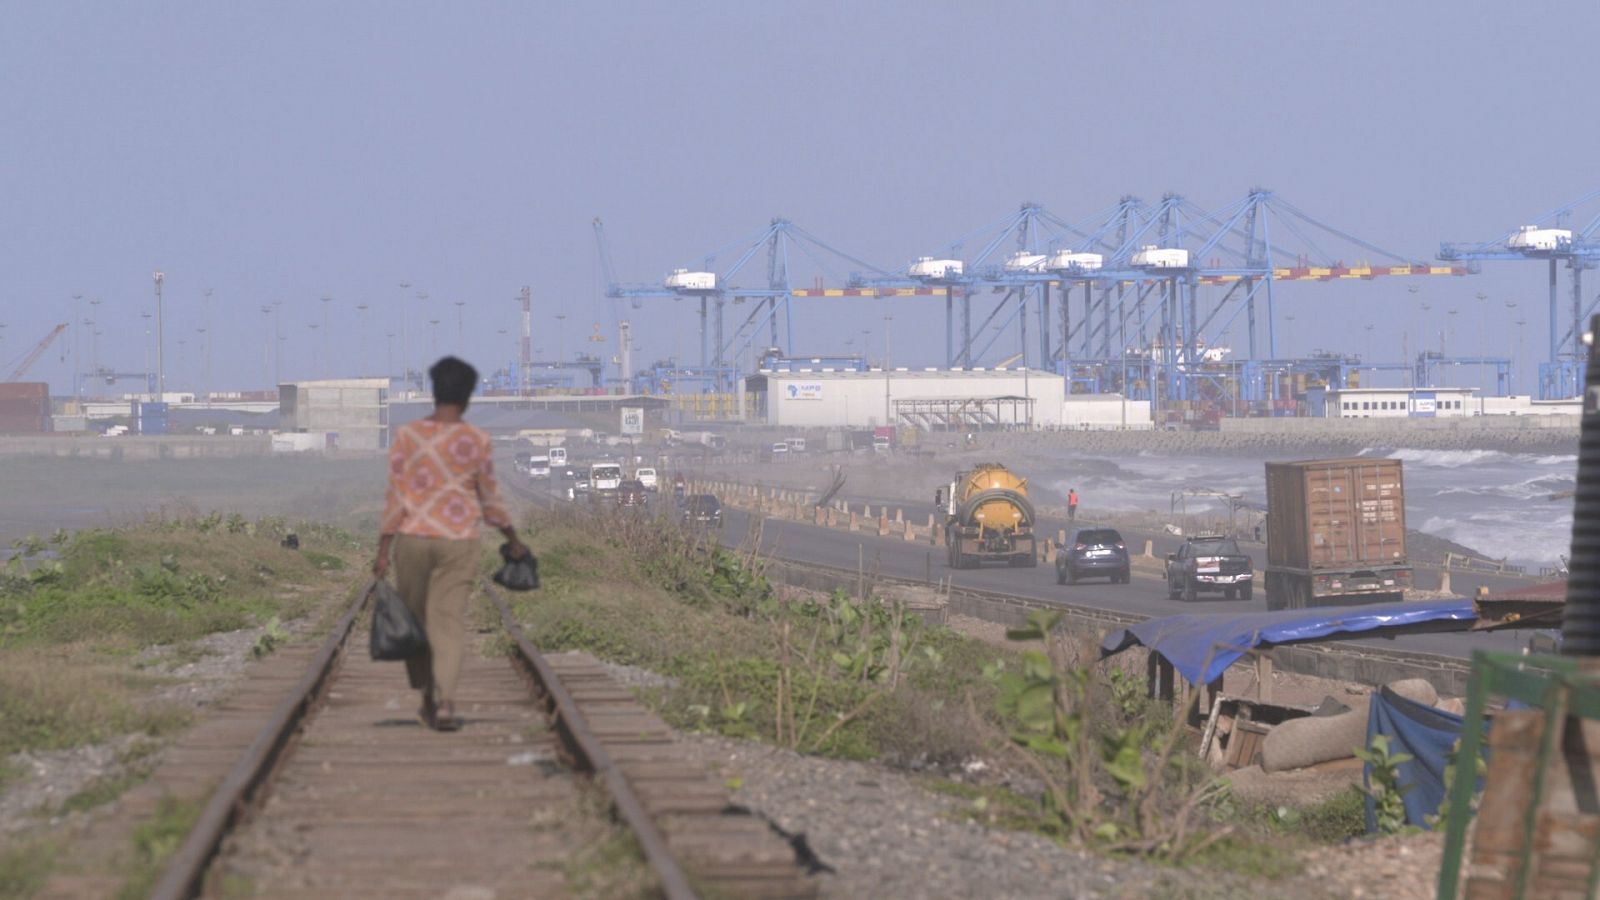 Señora caminando por la via del tren junto a la carretera del puerto en Ghana